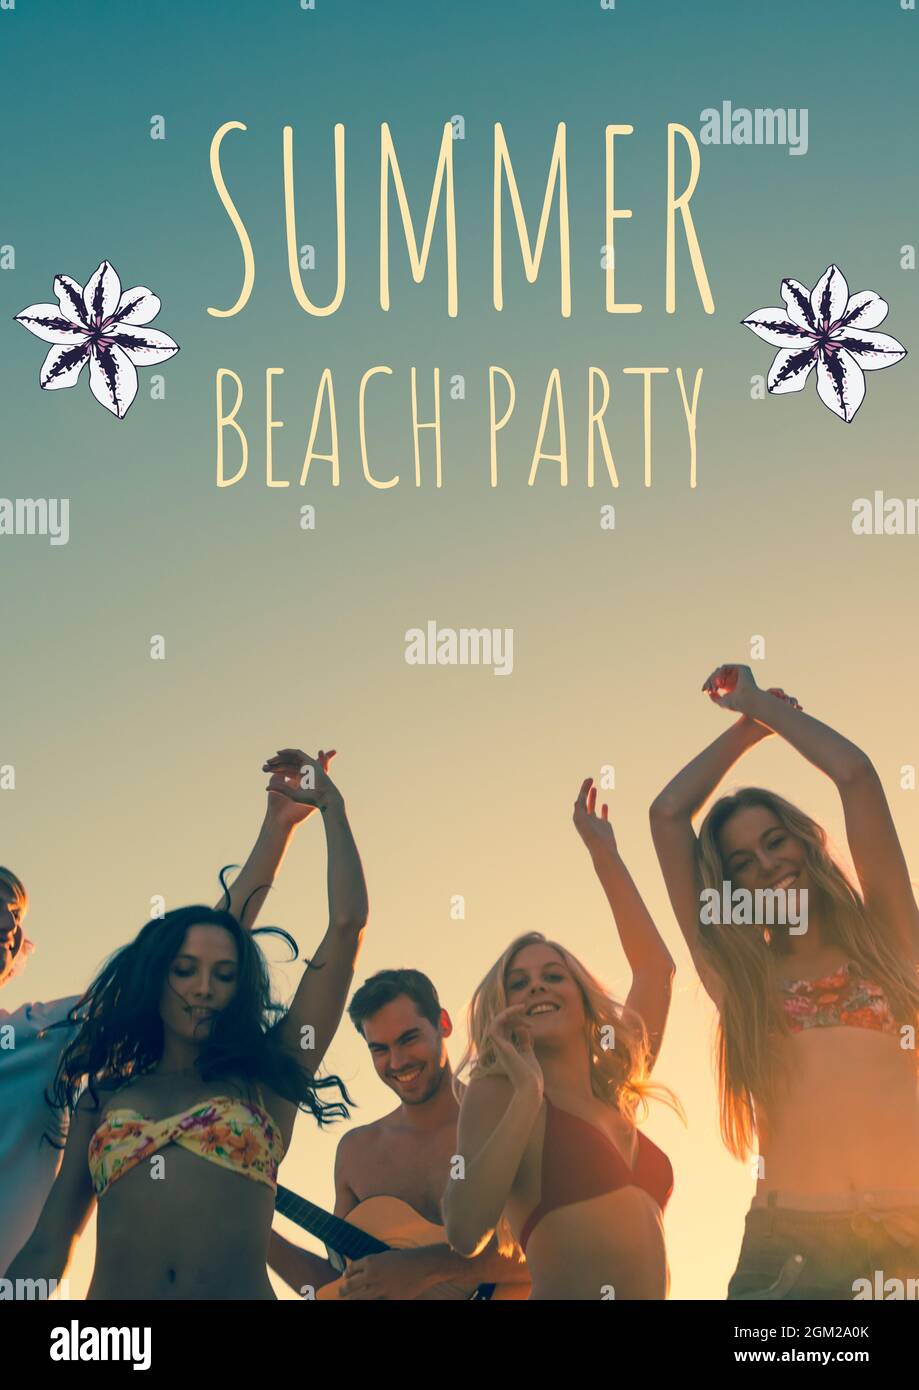 Texte de fête d'été sur la plage avec icônes de fleurs contre groupe d'amis à la plage Banque D'Images